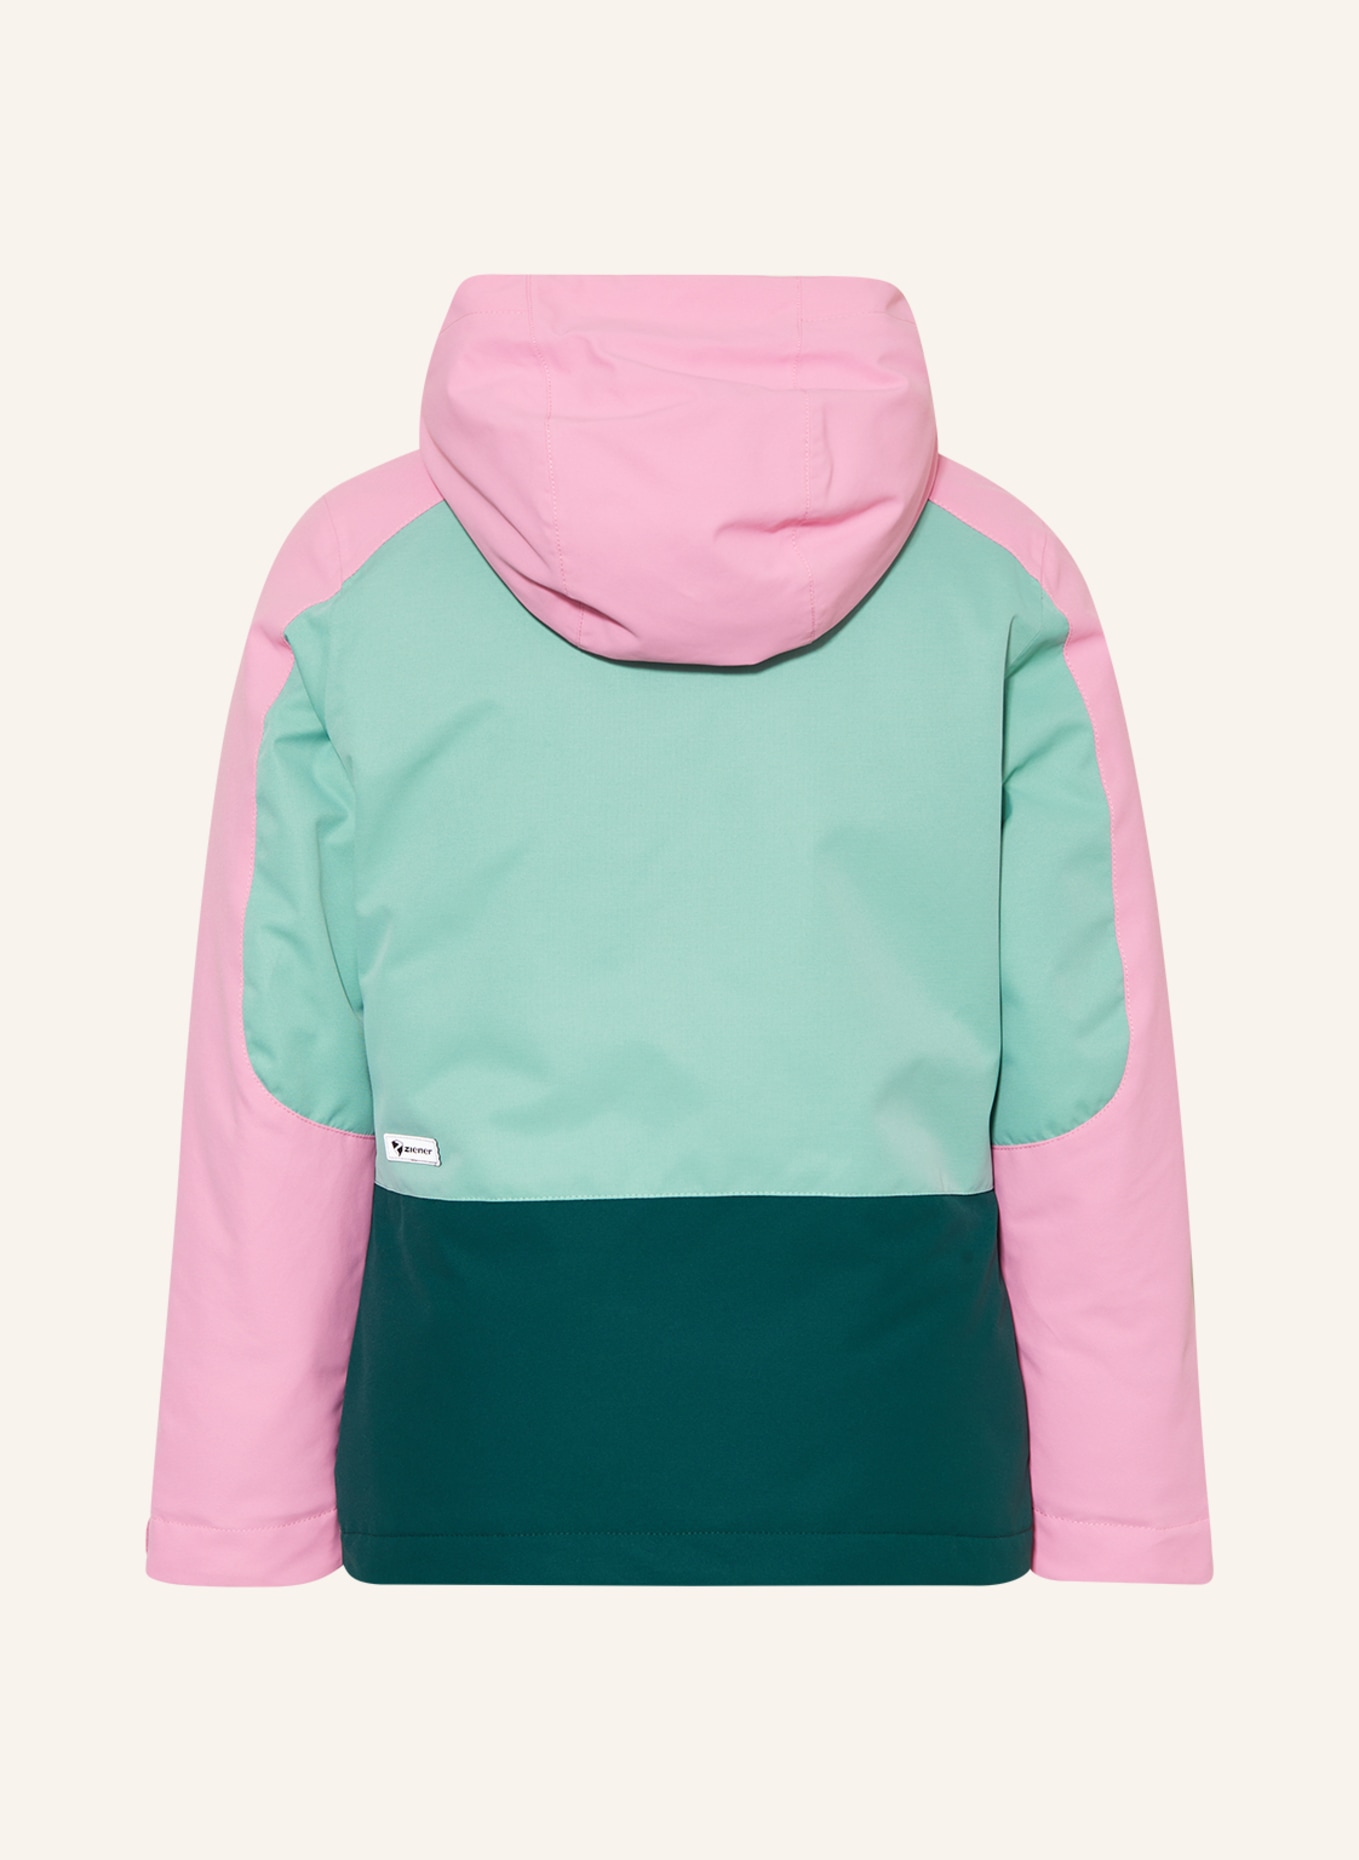 Skijacke in ziener rosa/ dunkelgrün mint/ AMELY